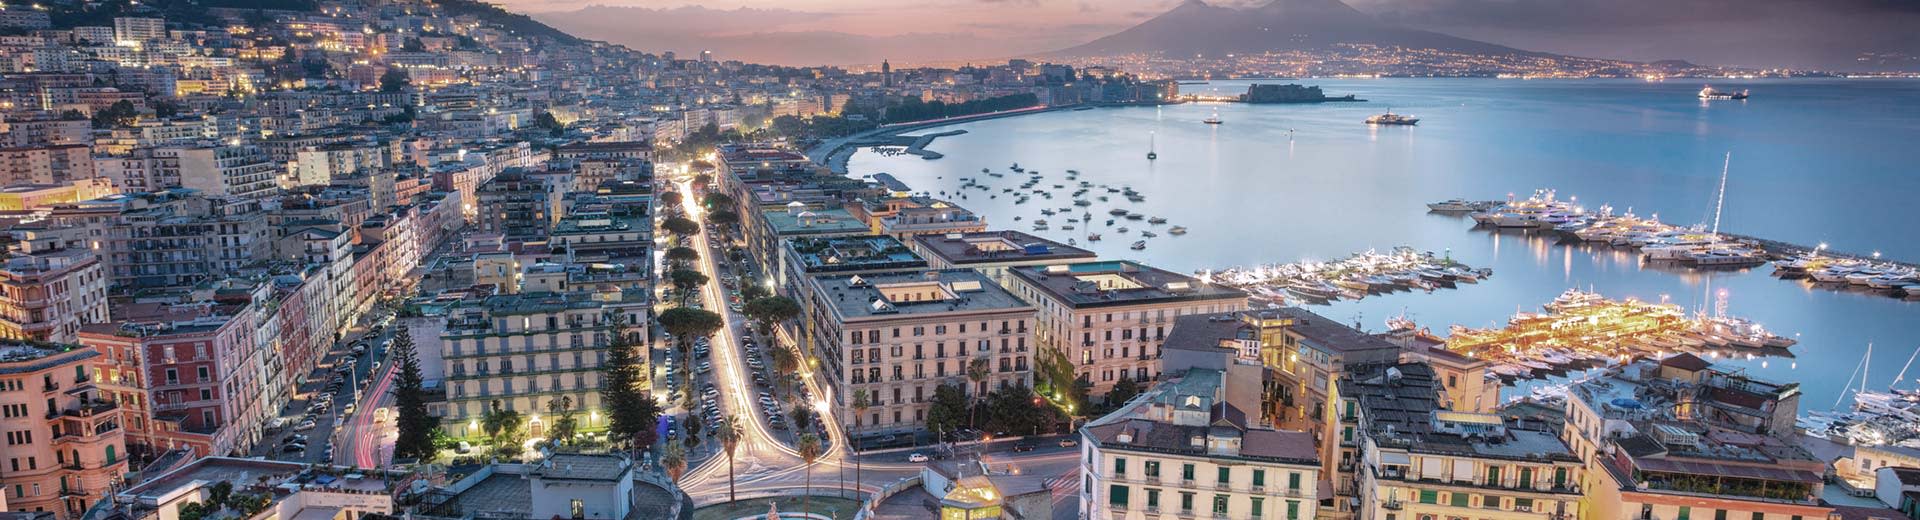 Die schöne Stadt Neapel erstreckt sich in der Abenddämmerung über die Küste, wobei der Ozean im Hintergrund liegt.